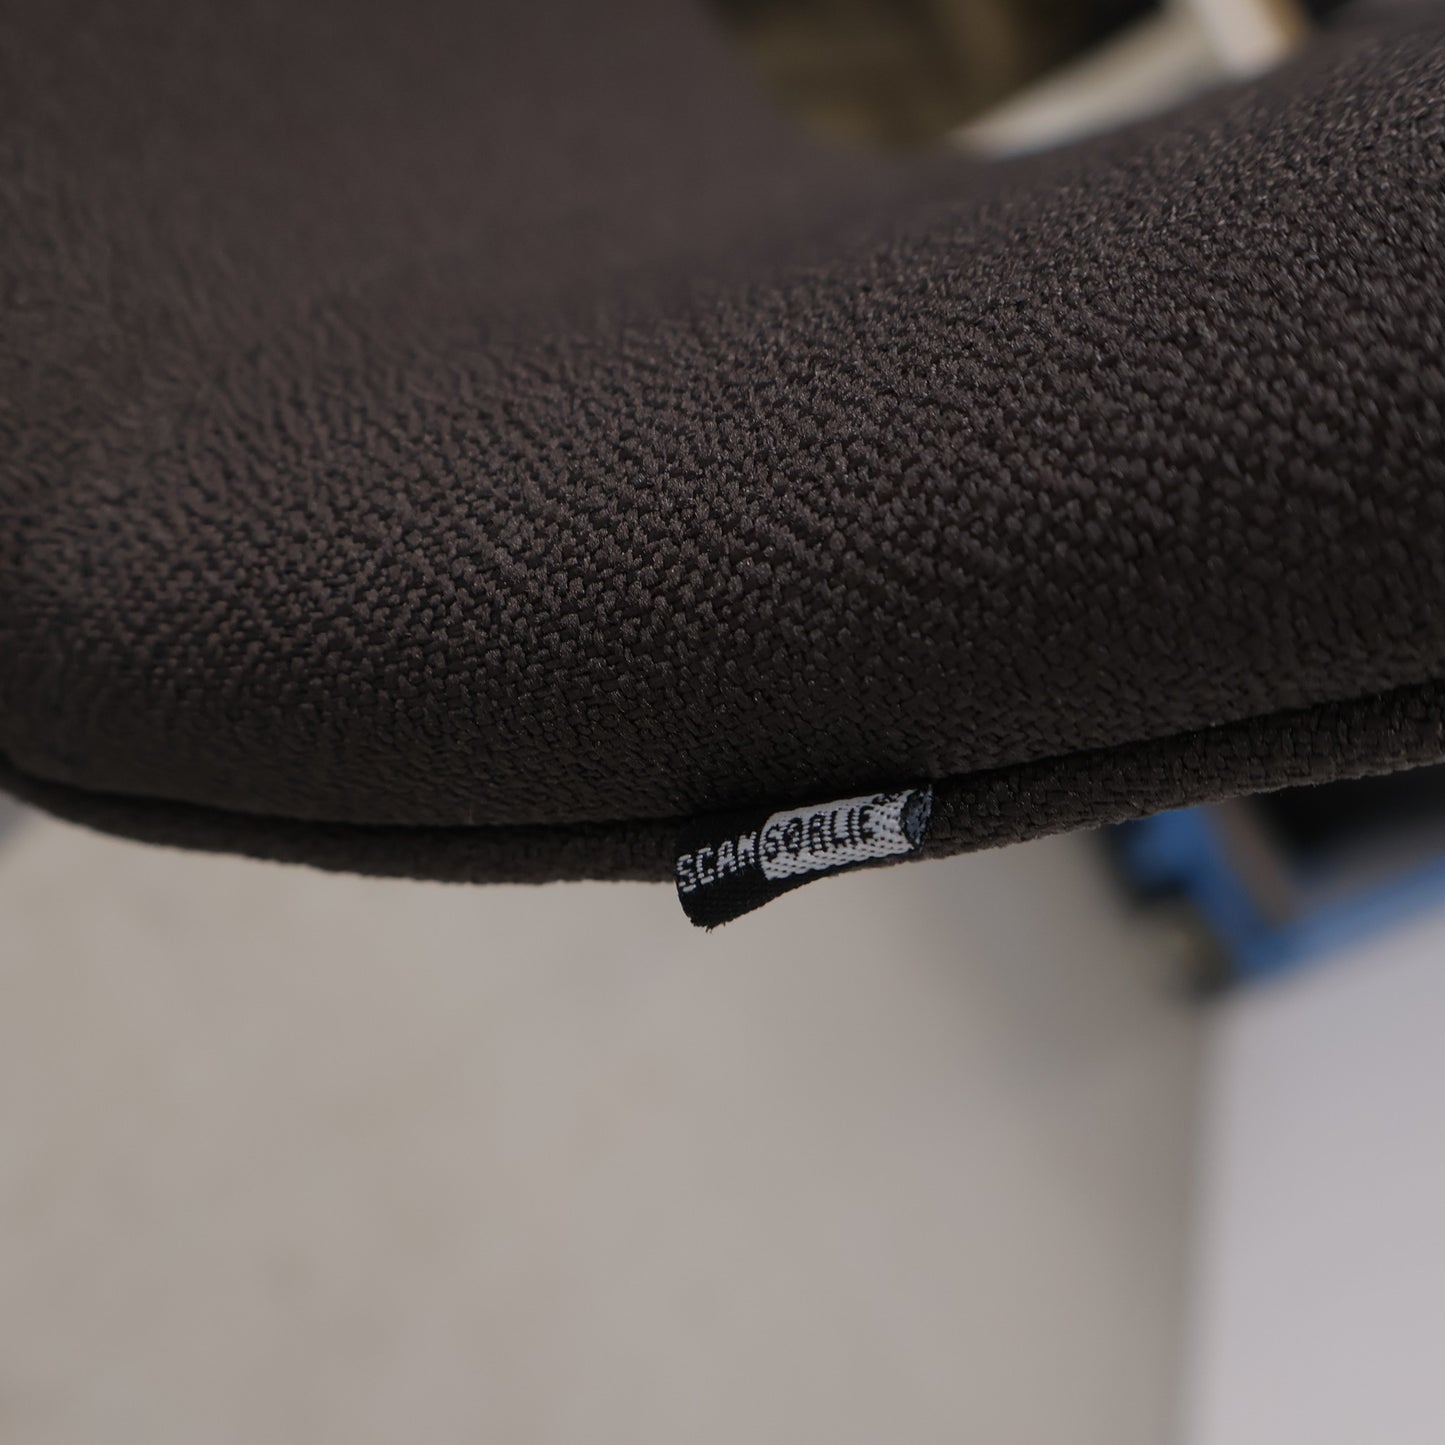 Nyrenset | ScanSørlie barstol i fargen sort